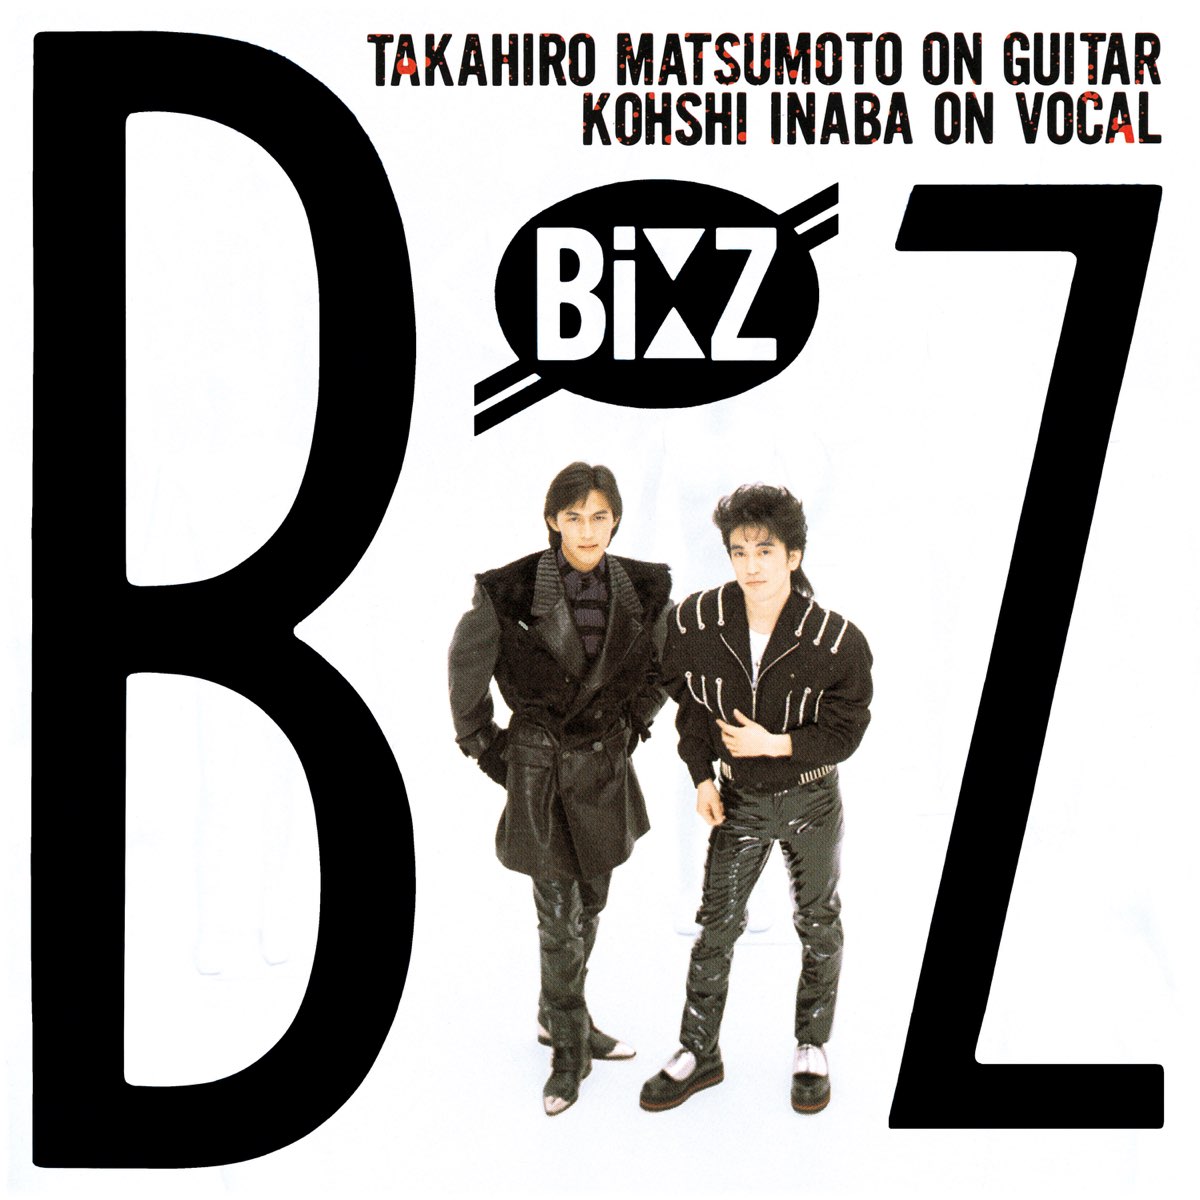 B z текст. B'Z. B+Z Love. B'Z Band. Обложка z.